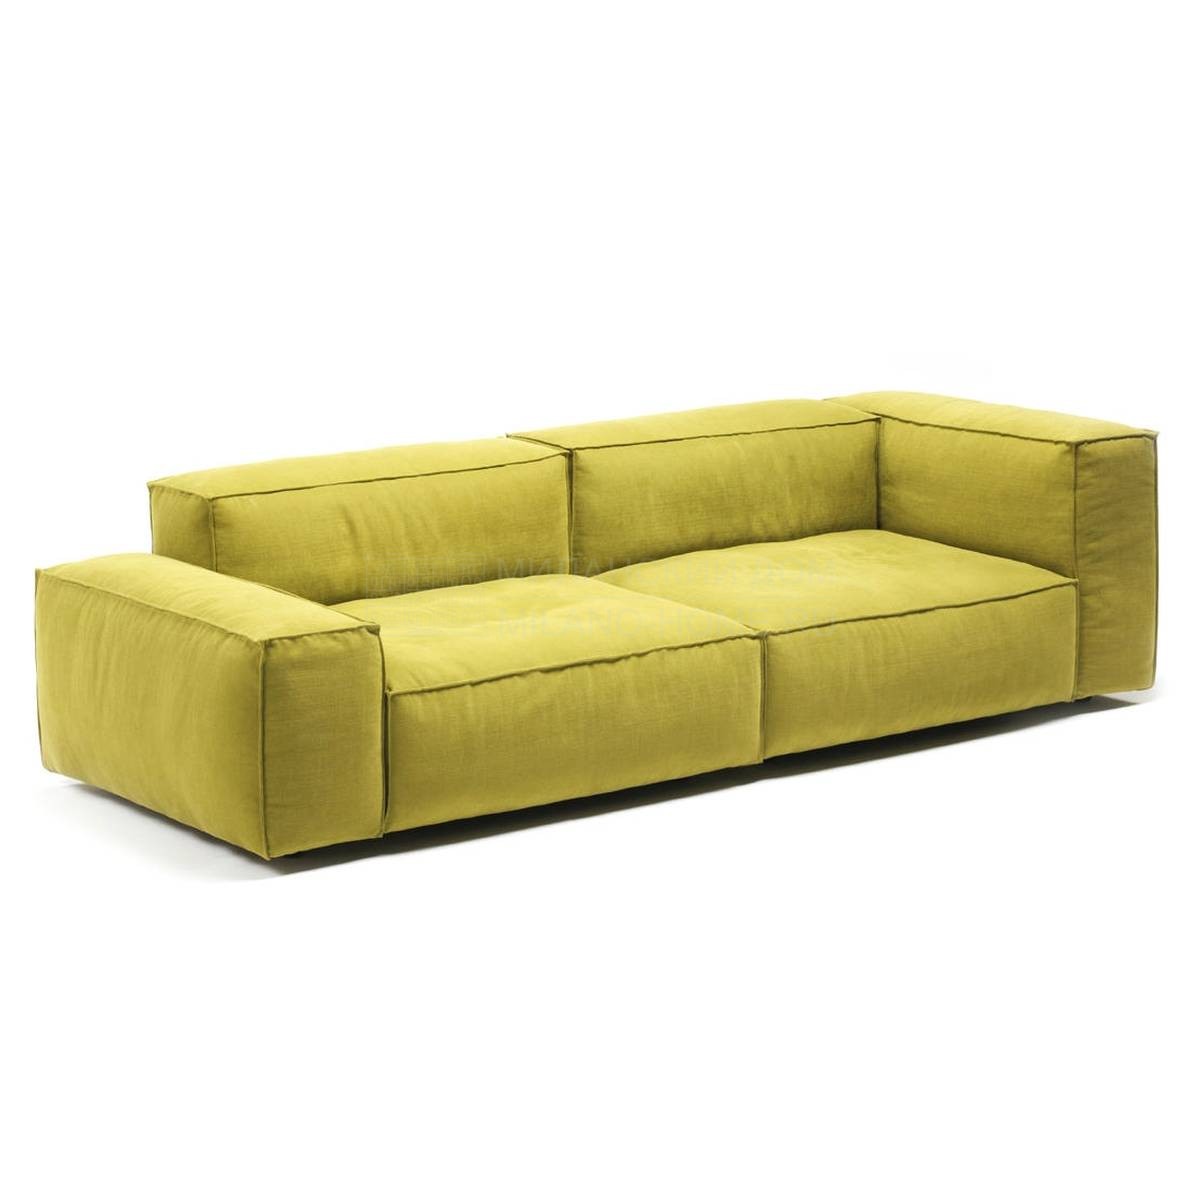 Угловой диван Neowall sofa из Италии фабрики LIVING DIVANI